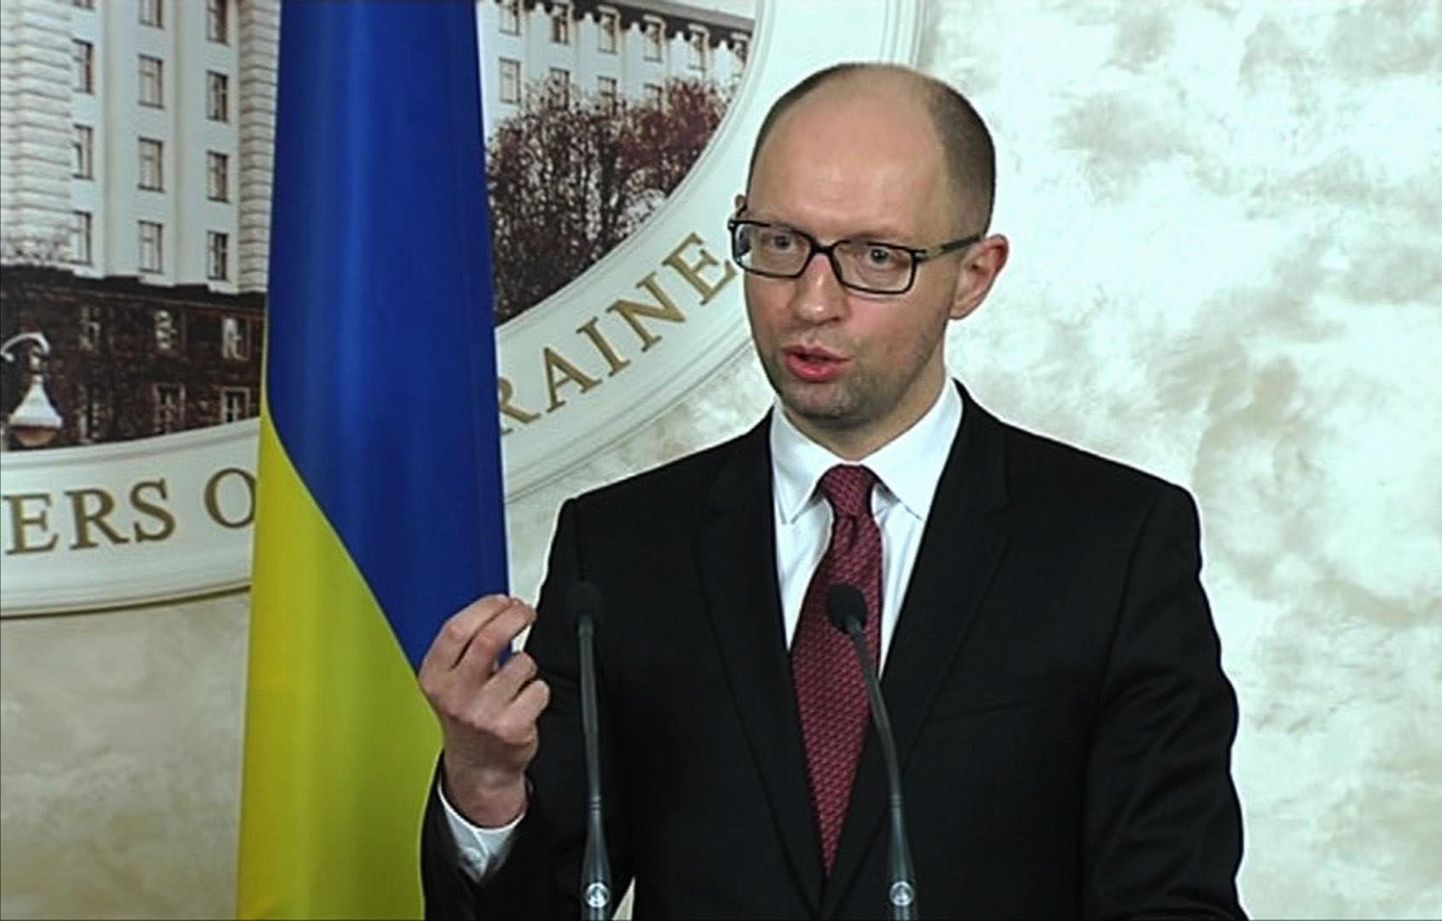 Majandusminstri asetäitjal oli konflikt peaminister Arseni Jatsenjukiga.